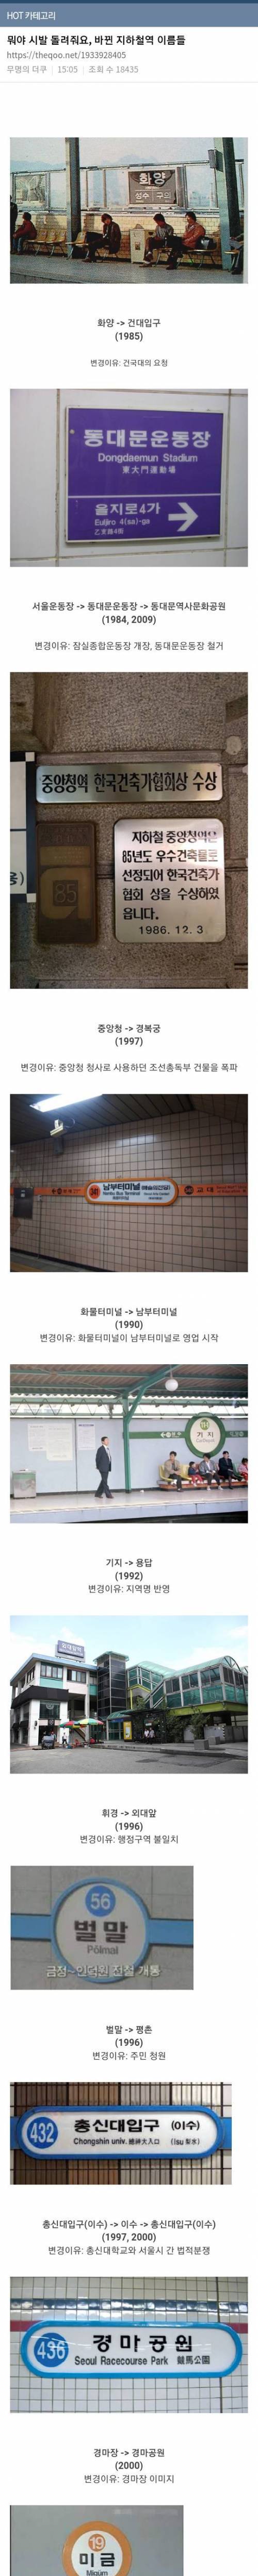 [스압] 바뀐 지하철역 이름들.jpg